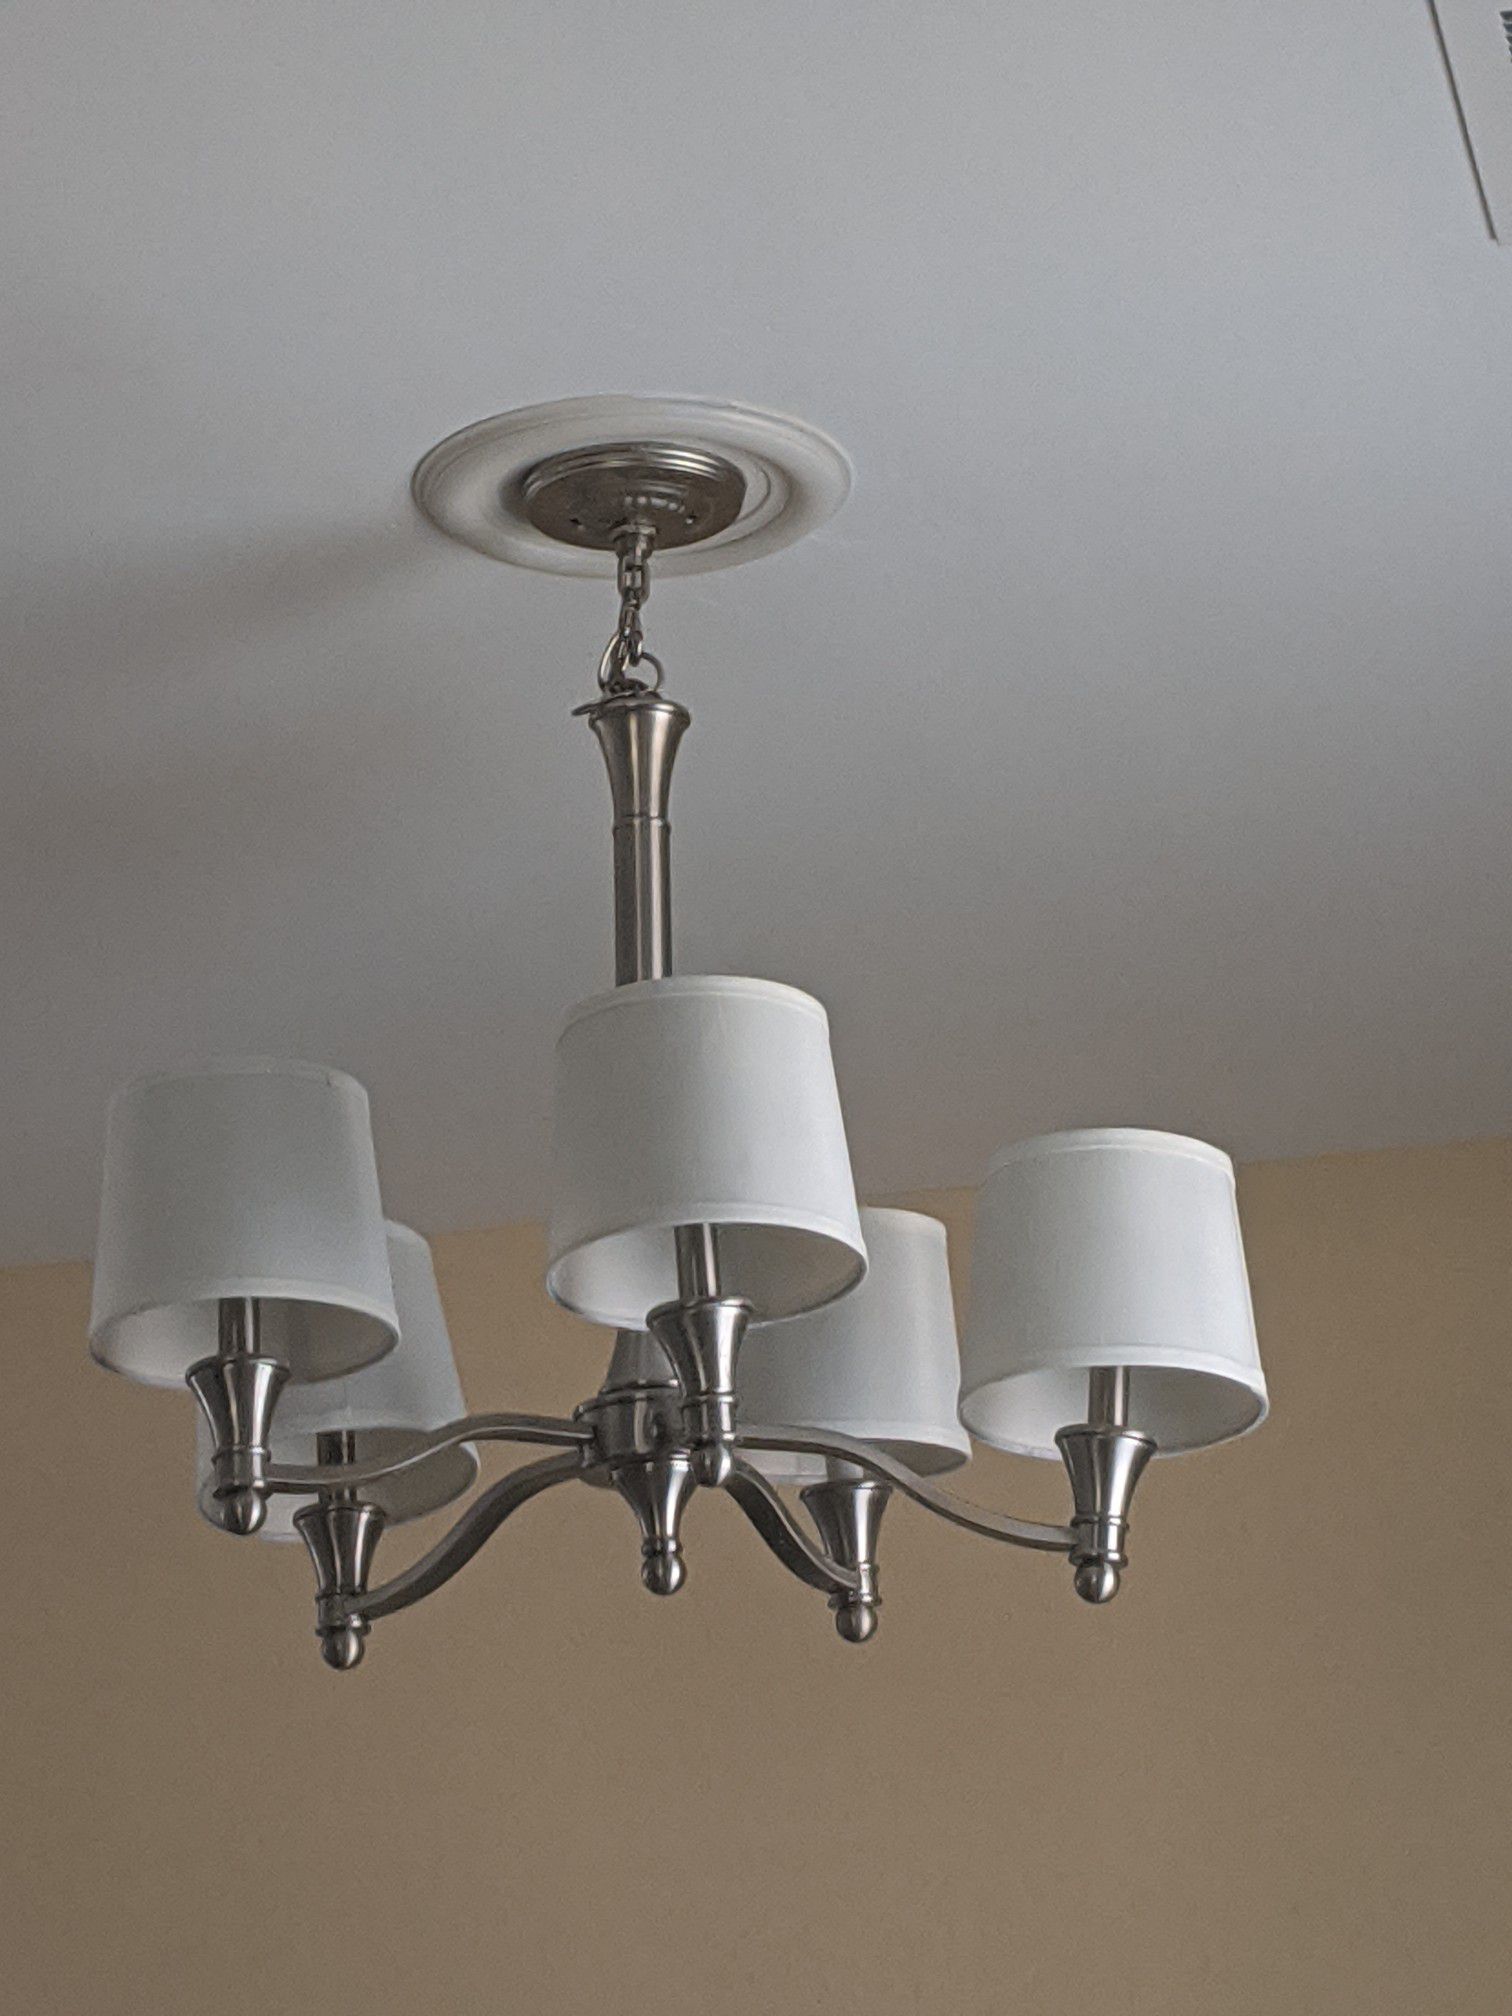 Light fixture/ chandelier